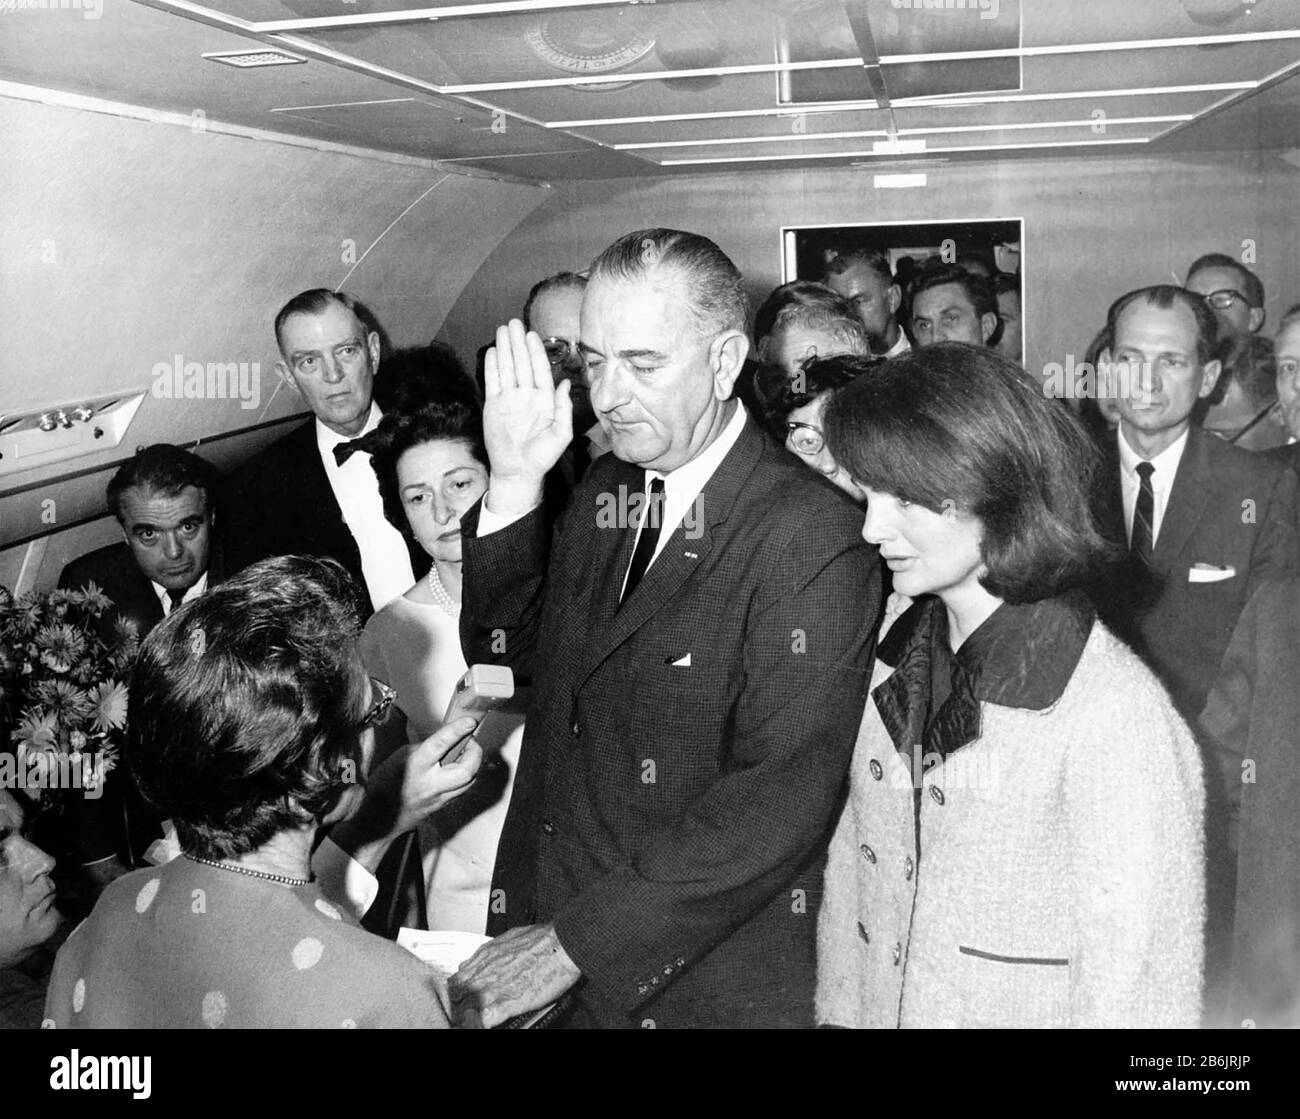 Lyndon B. JOHNSON è giurato in come presidente degli Stati Uniti a bordo di Air Force One il 22 novembre 1963 fiancheggiato da sua moglie a sinistra e Jackie Kennedy. Foto: Cecil Stoughton Foto Stock